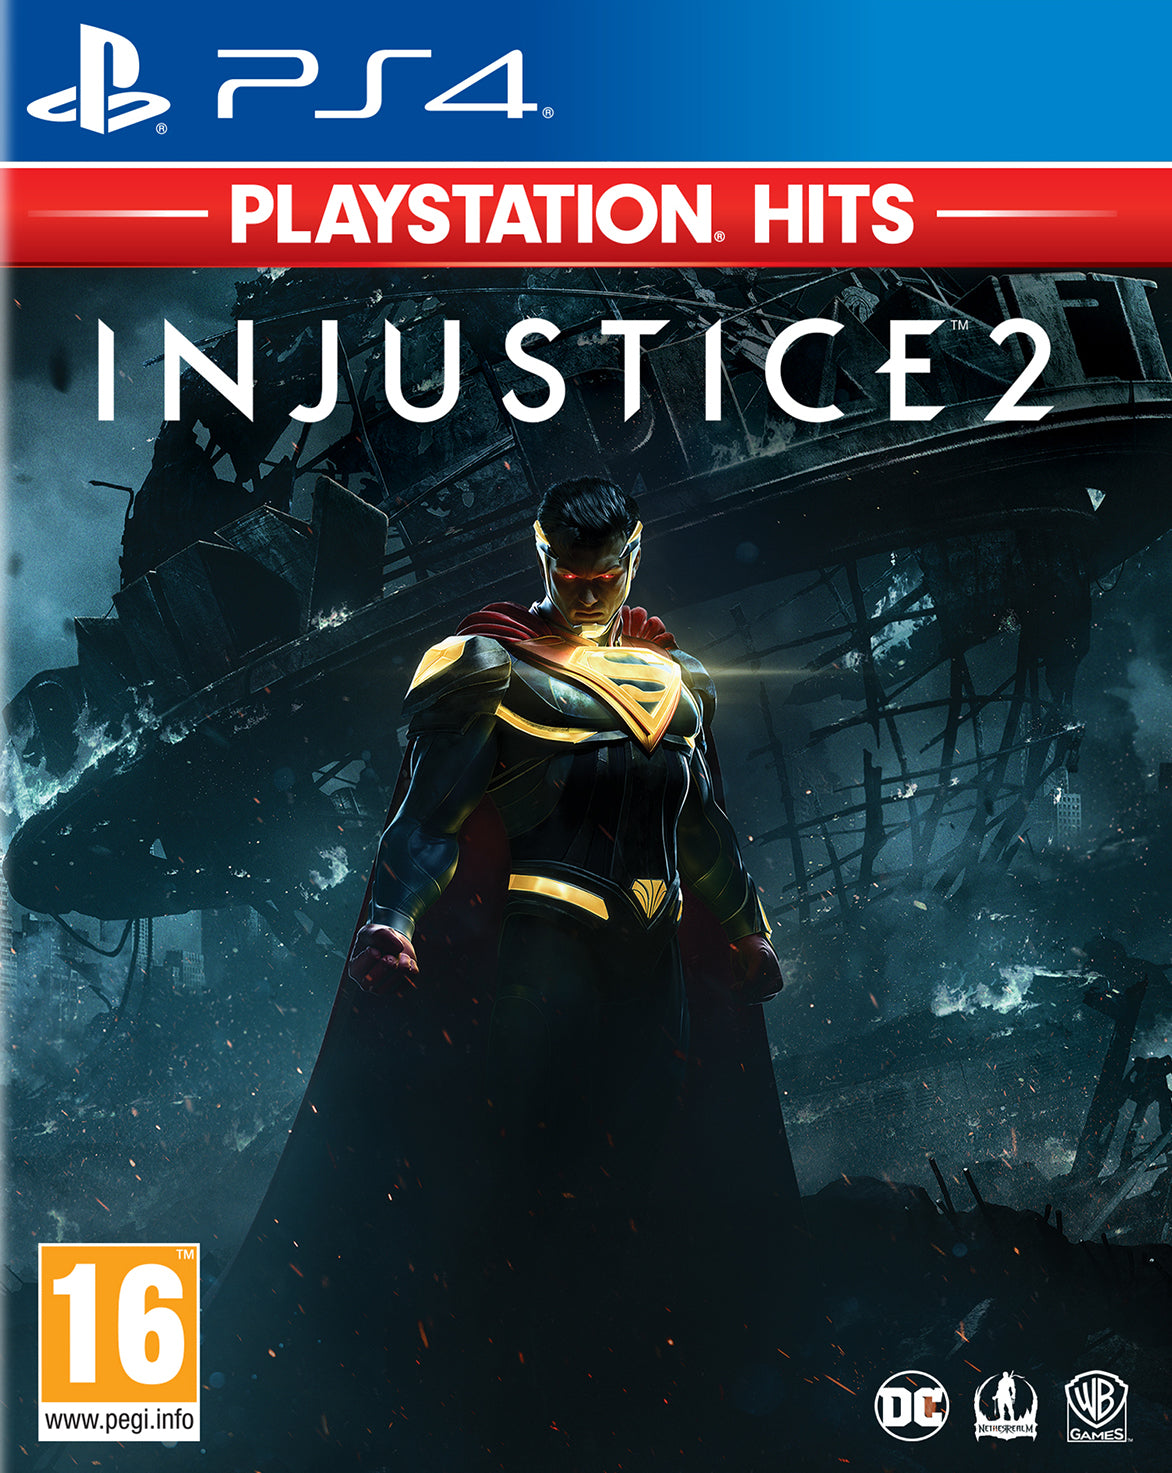 Playstation Hits Injustice 2